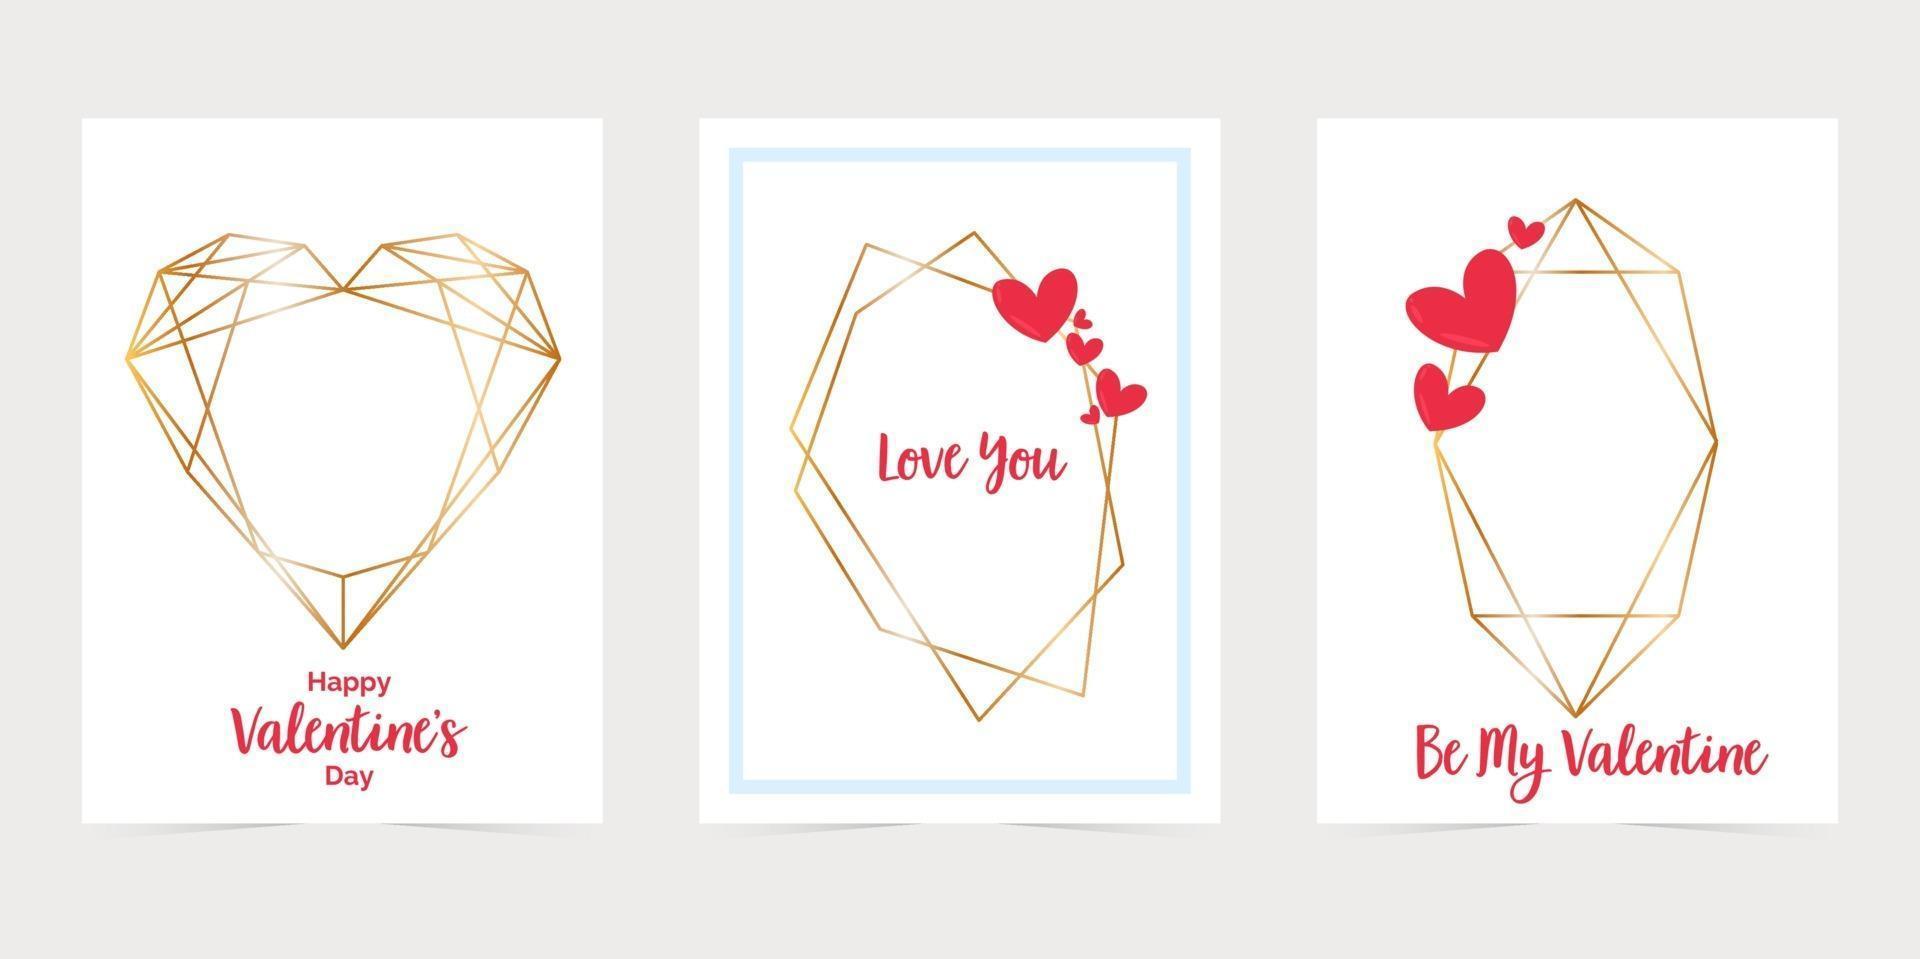 Valentinstagskarte mit goldenen Sechseckrahmen. Ich liebe dich Papierkartenumschlag. goldene polygonale Rahmenkarten vektor